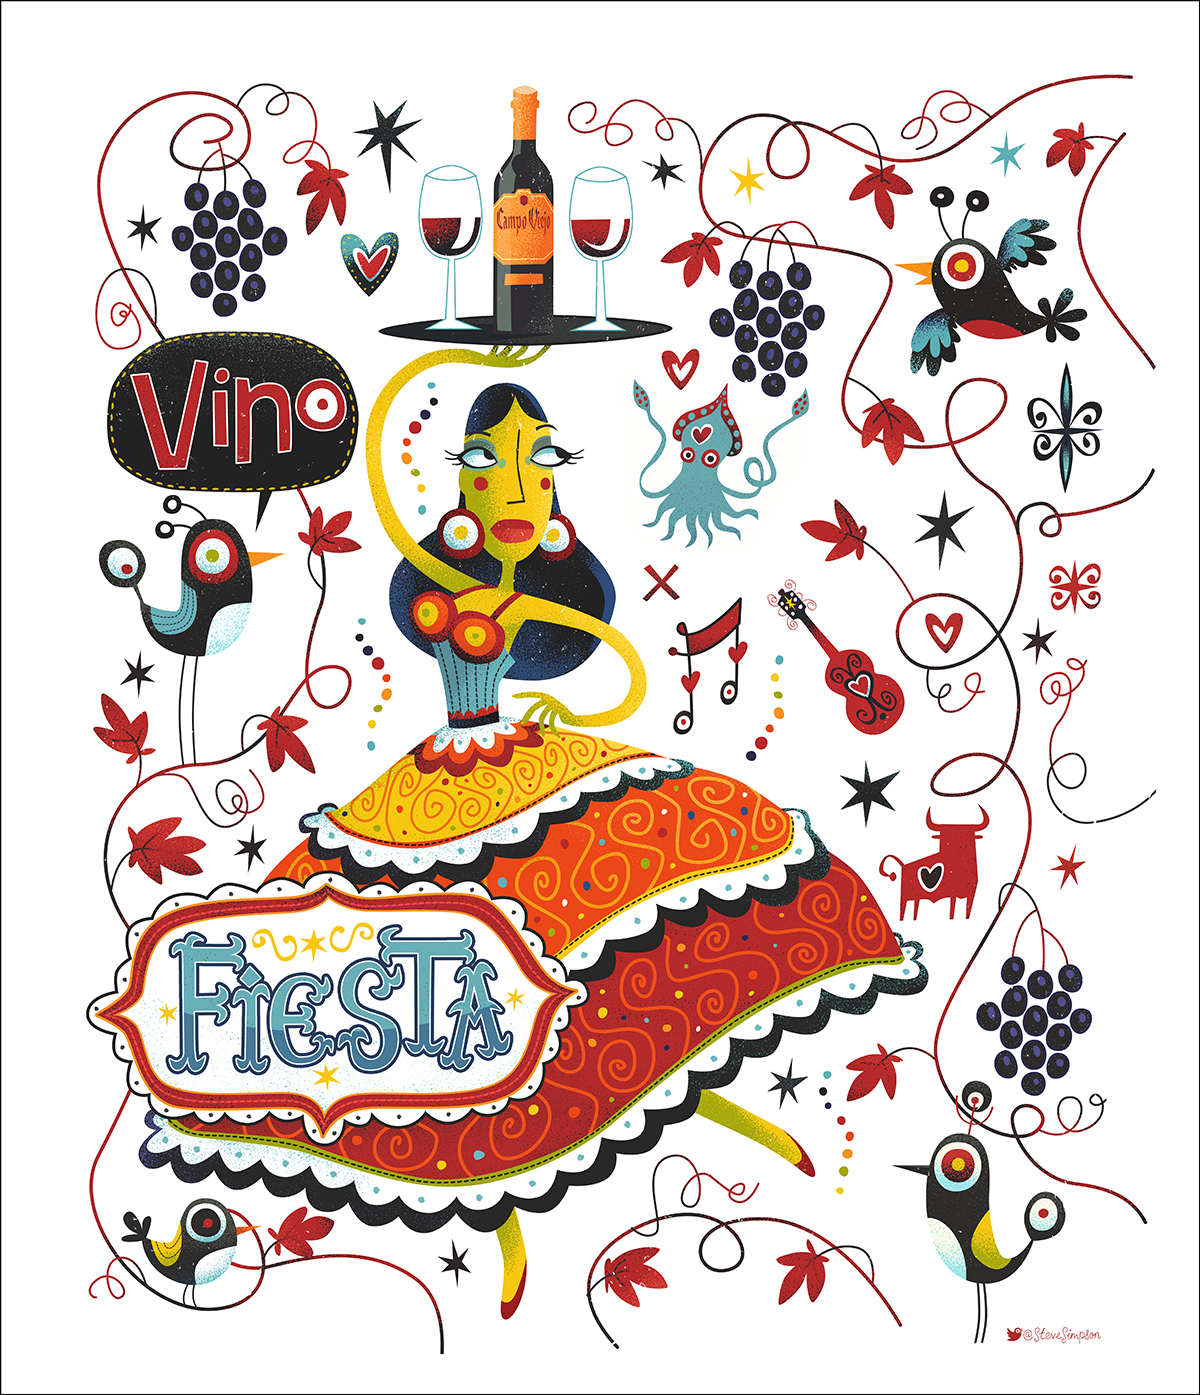 spain wine tapas brids Flamenco dancer restaurant map Fun whimsical grapes vine leaves bull guitar HAND LETTERING